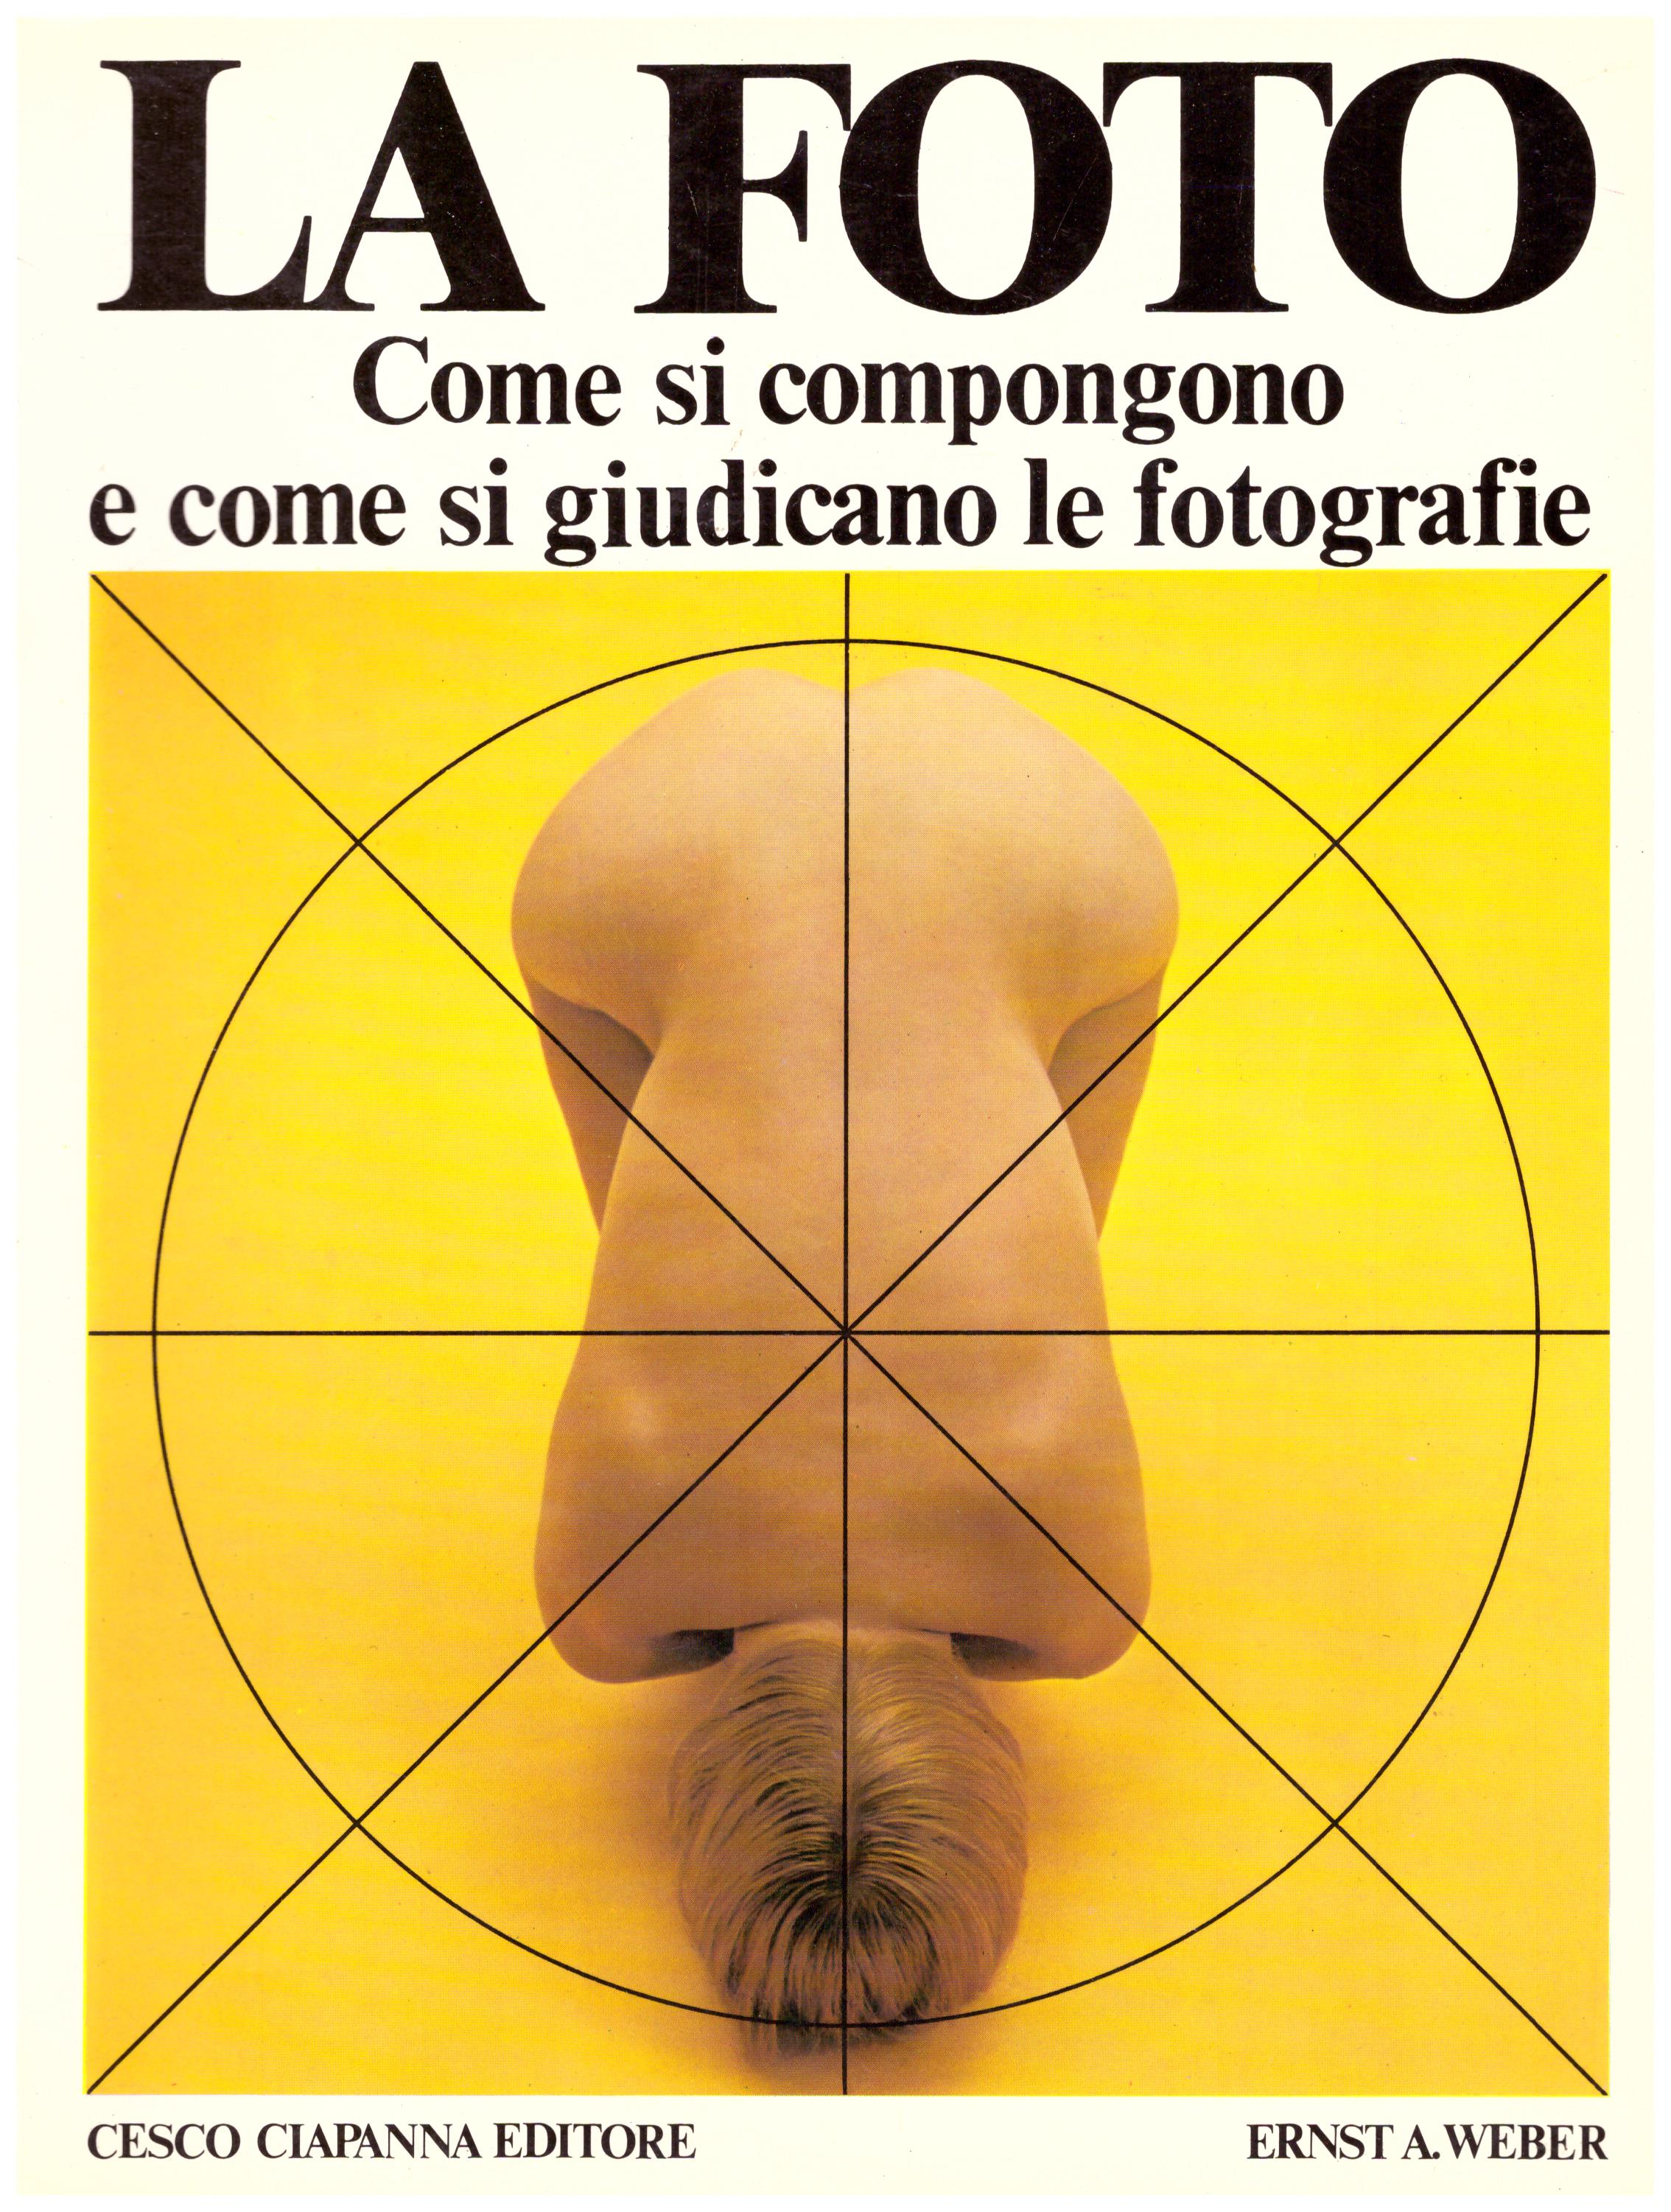 Titolo: La foto, come si compongono e come si giudicano le foto Autore: Ernst A. Weber Editore: Cesco Ciapanna editore, 1982